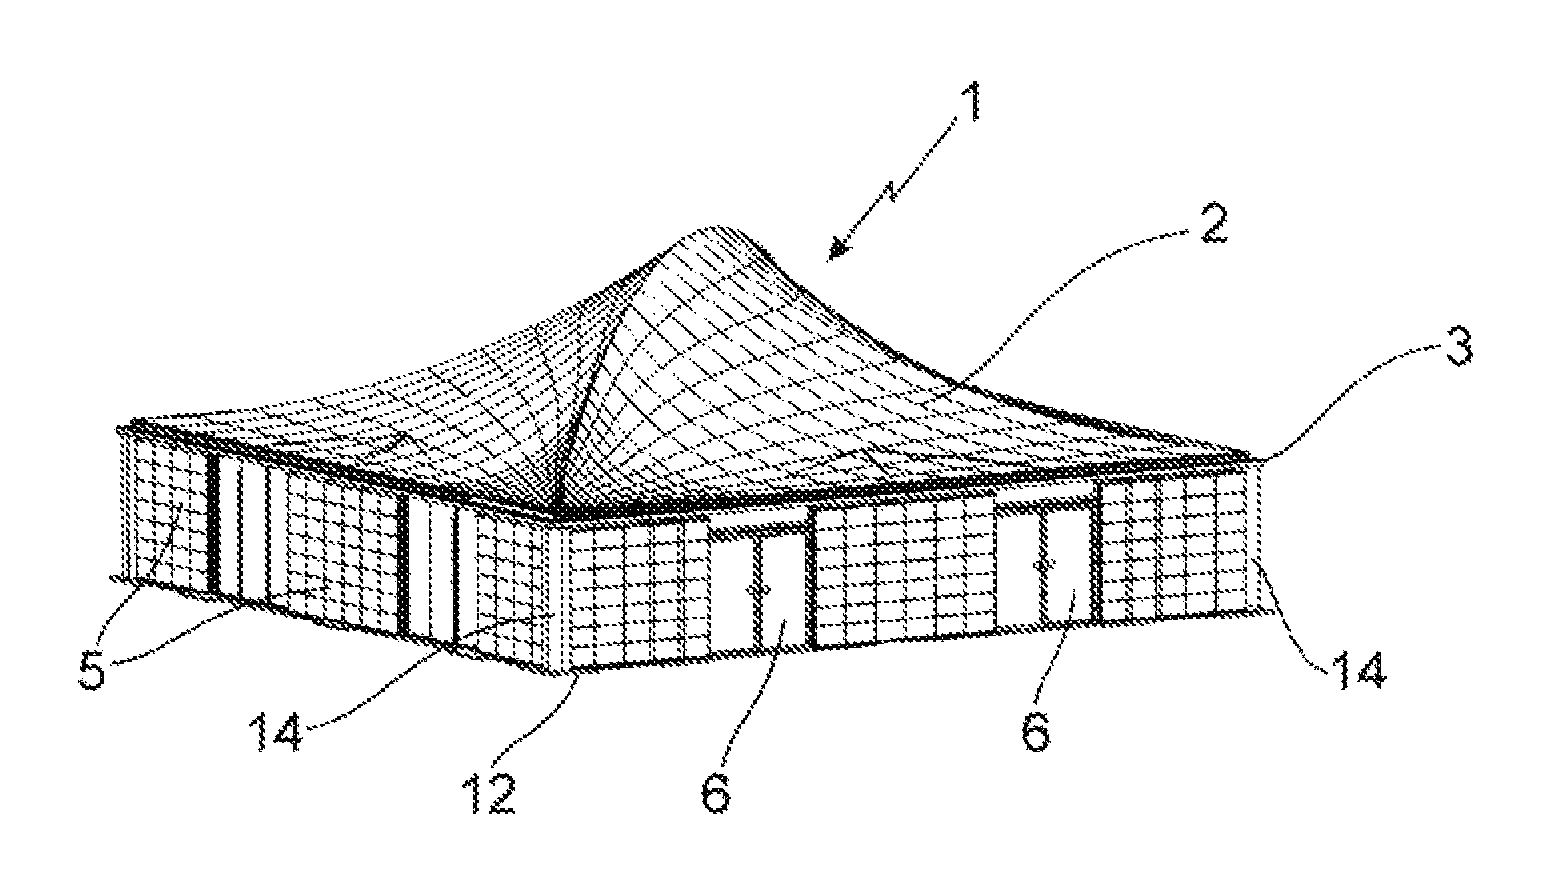 Lightweight housing module and modular building